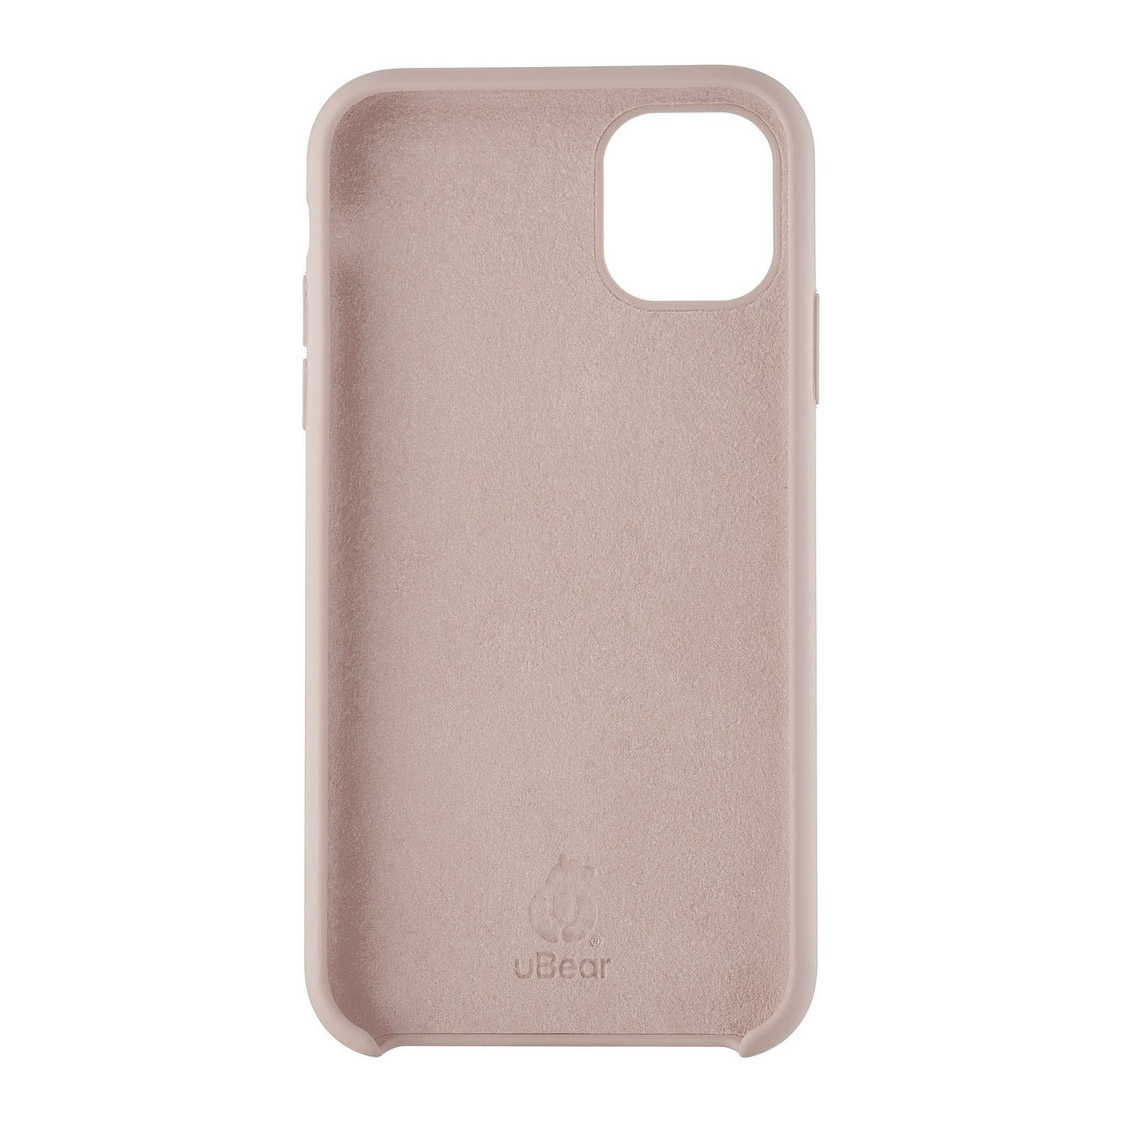 Чехол uBear Soft-touch Case для Apple iPhone 11, светло-розовый